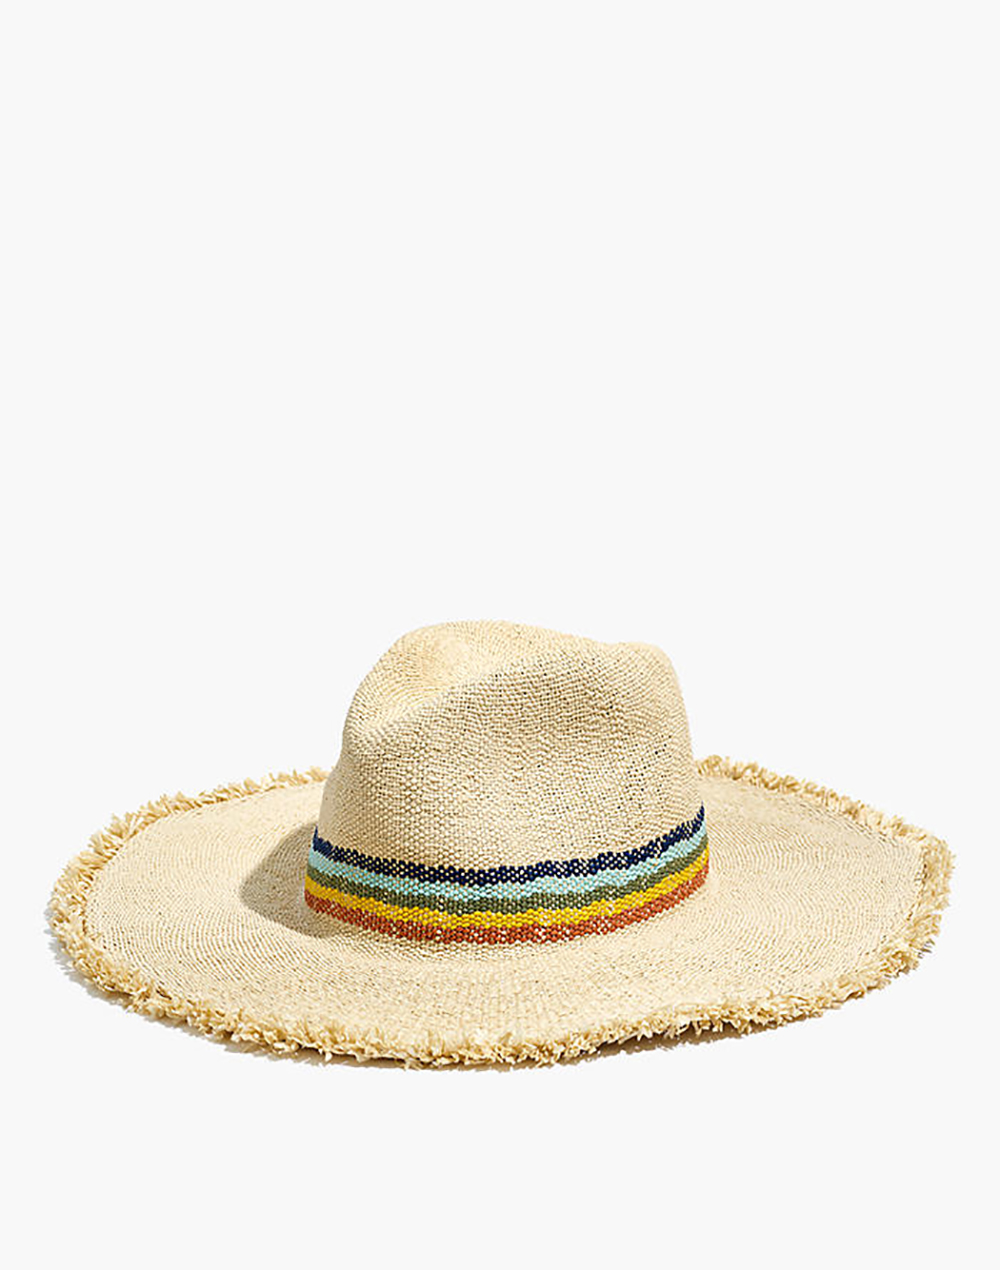 Biltmore Wide Brimmed Rainbow Straw Hat